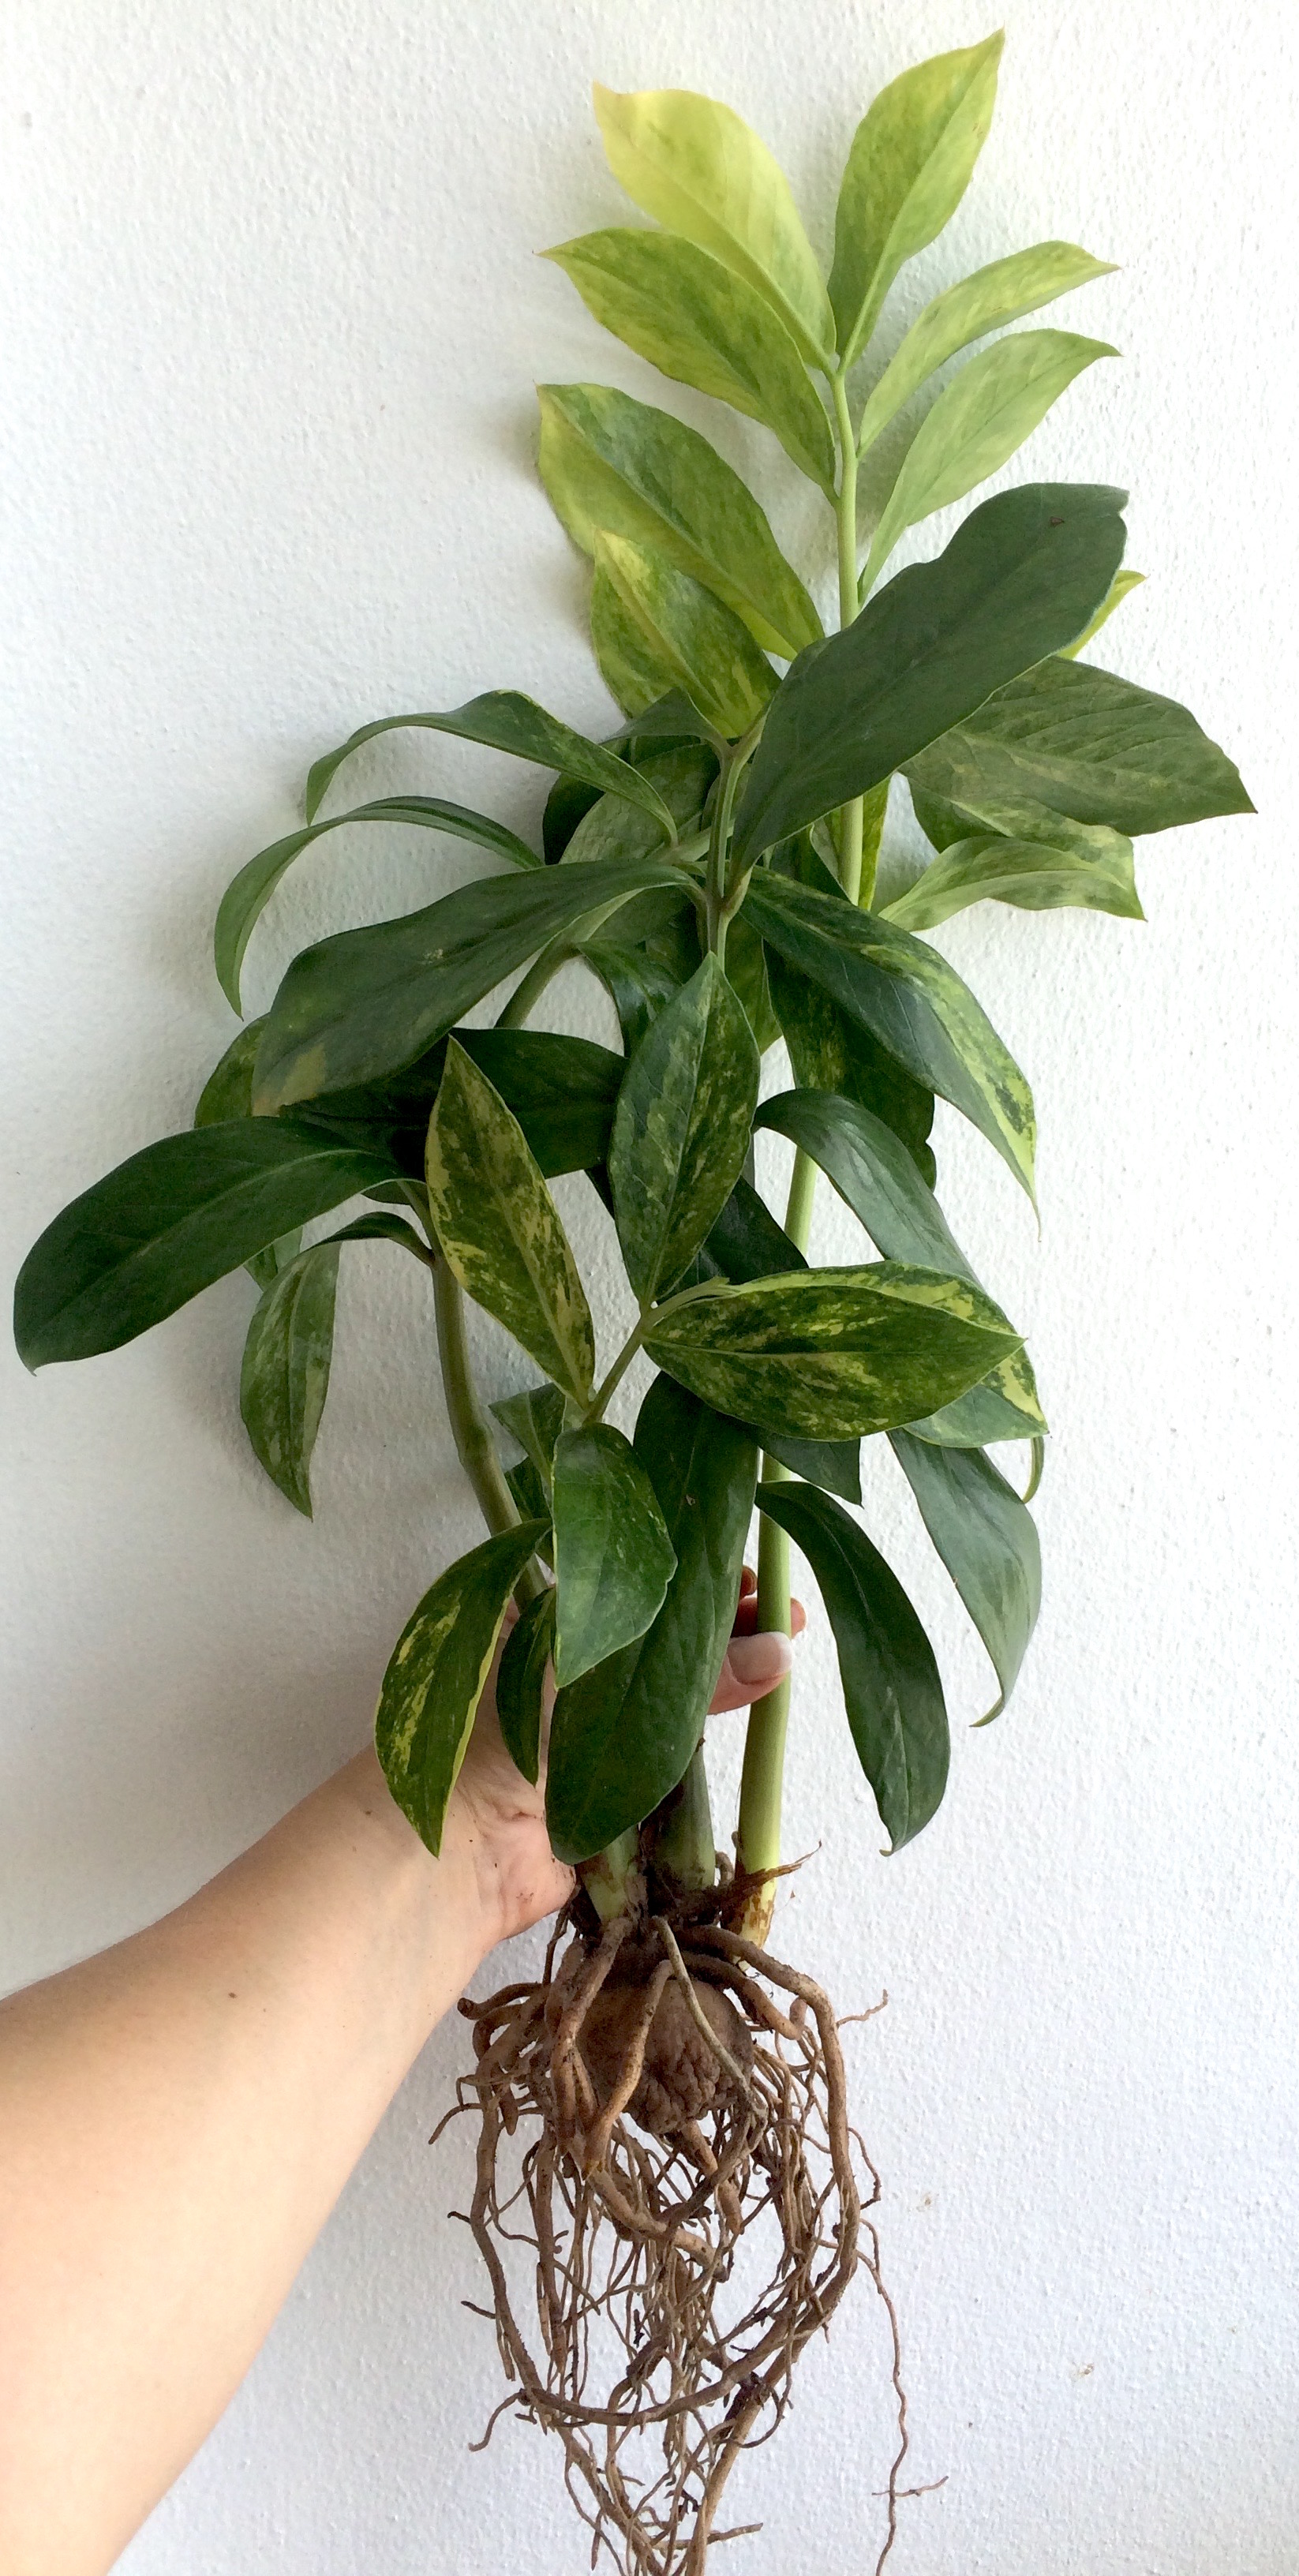 Zamioculcas zamifolia lemon variegated (long leaf)/ Замиокулькас замиелистный, желтая (лимонная)  вариегатность, длиннолистная форма  20-30-45-60